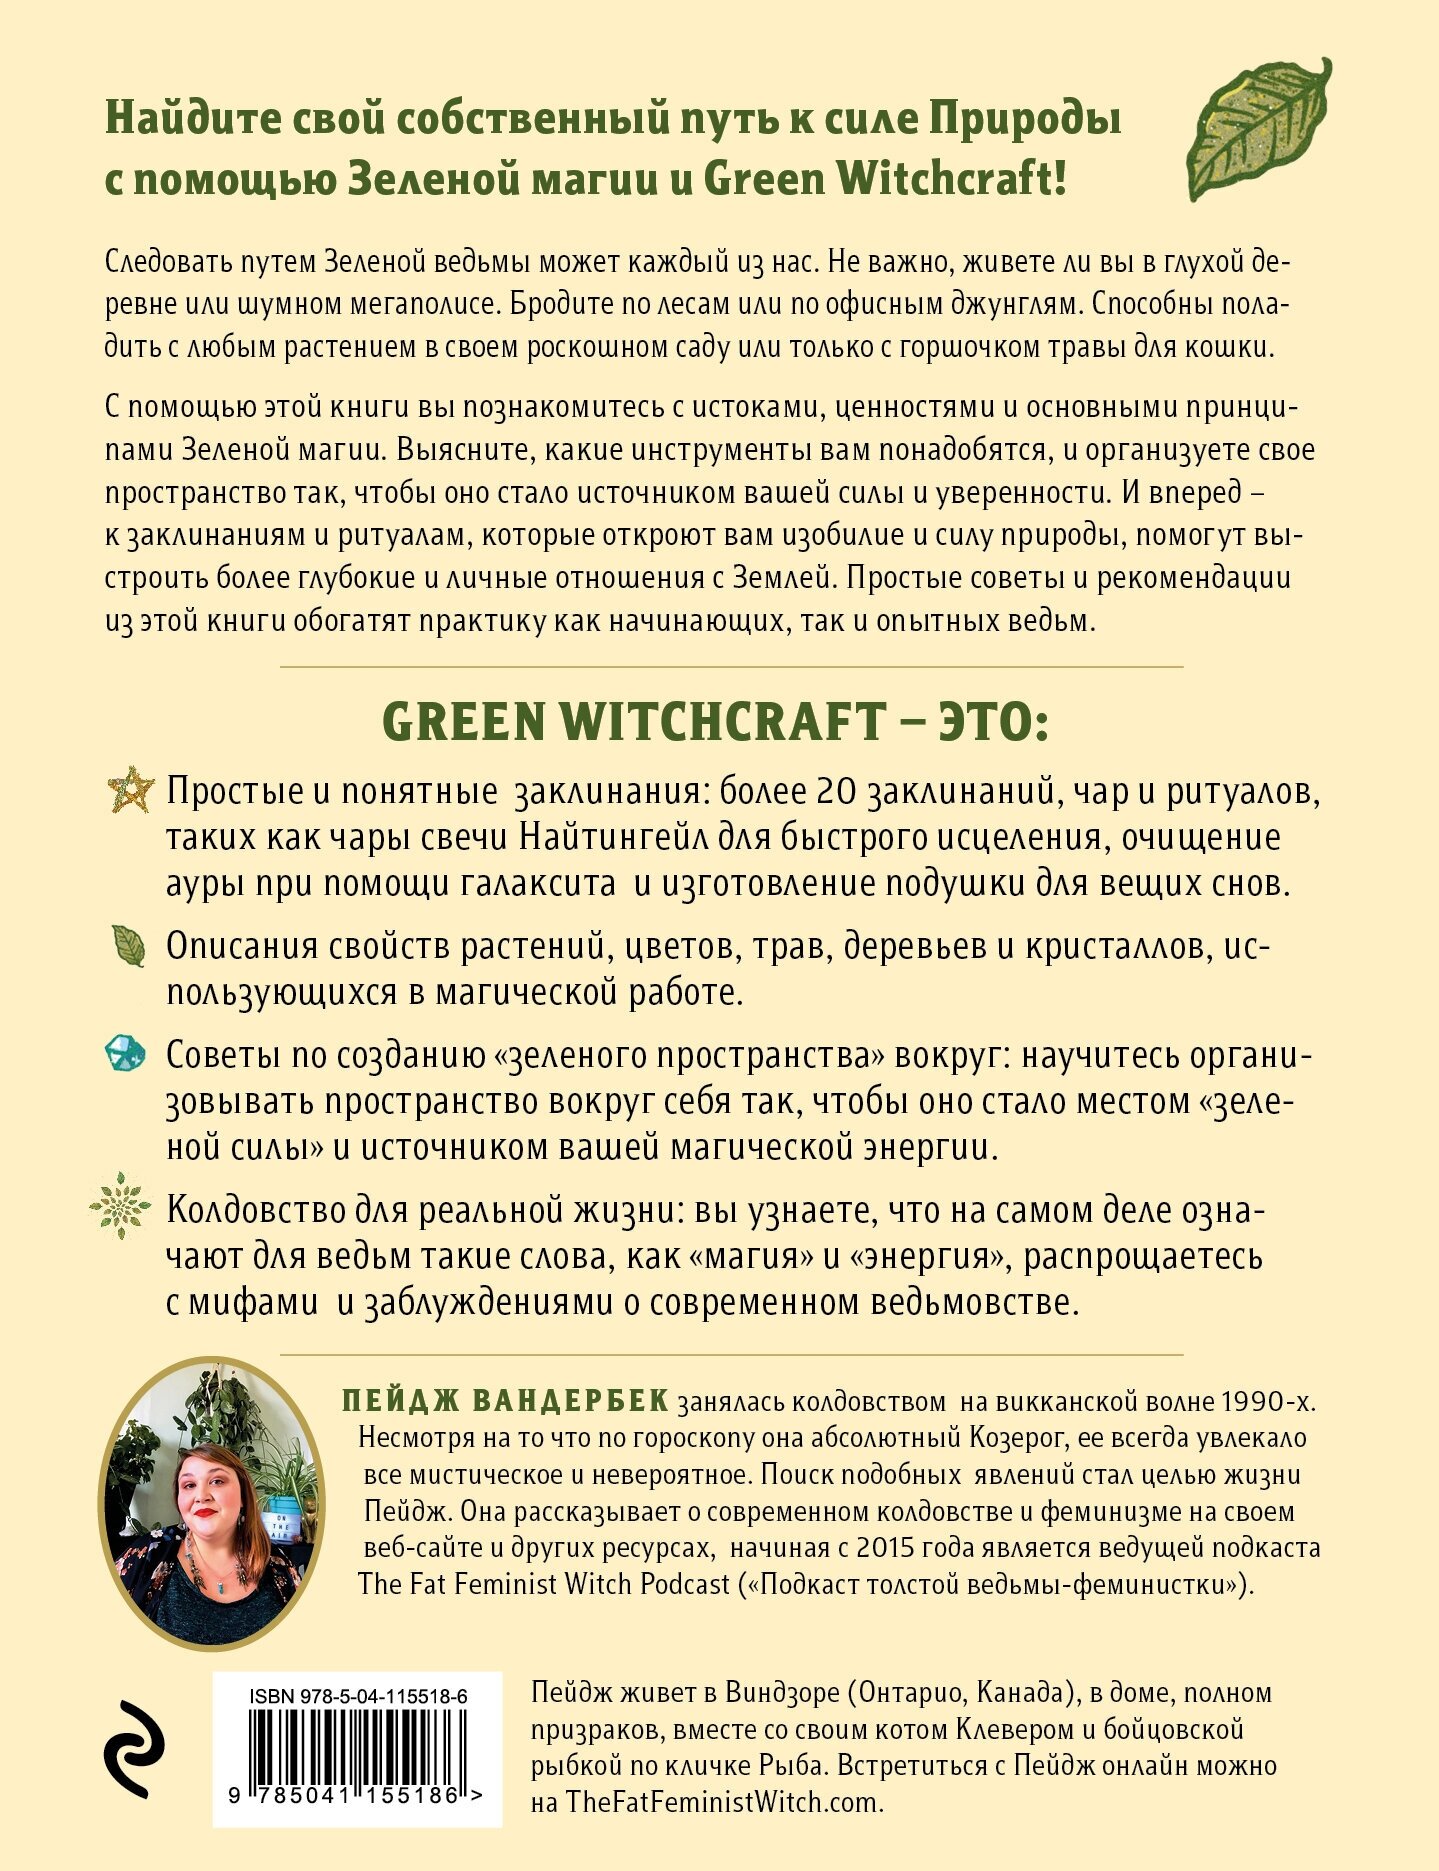 Green Witchcraft. Как открыть для себя магию цветов, трав, деревьев, кристаллов и многое другое - фото №2